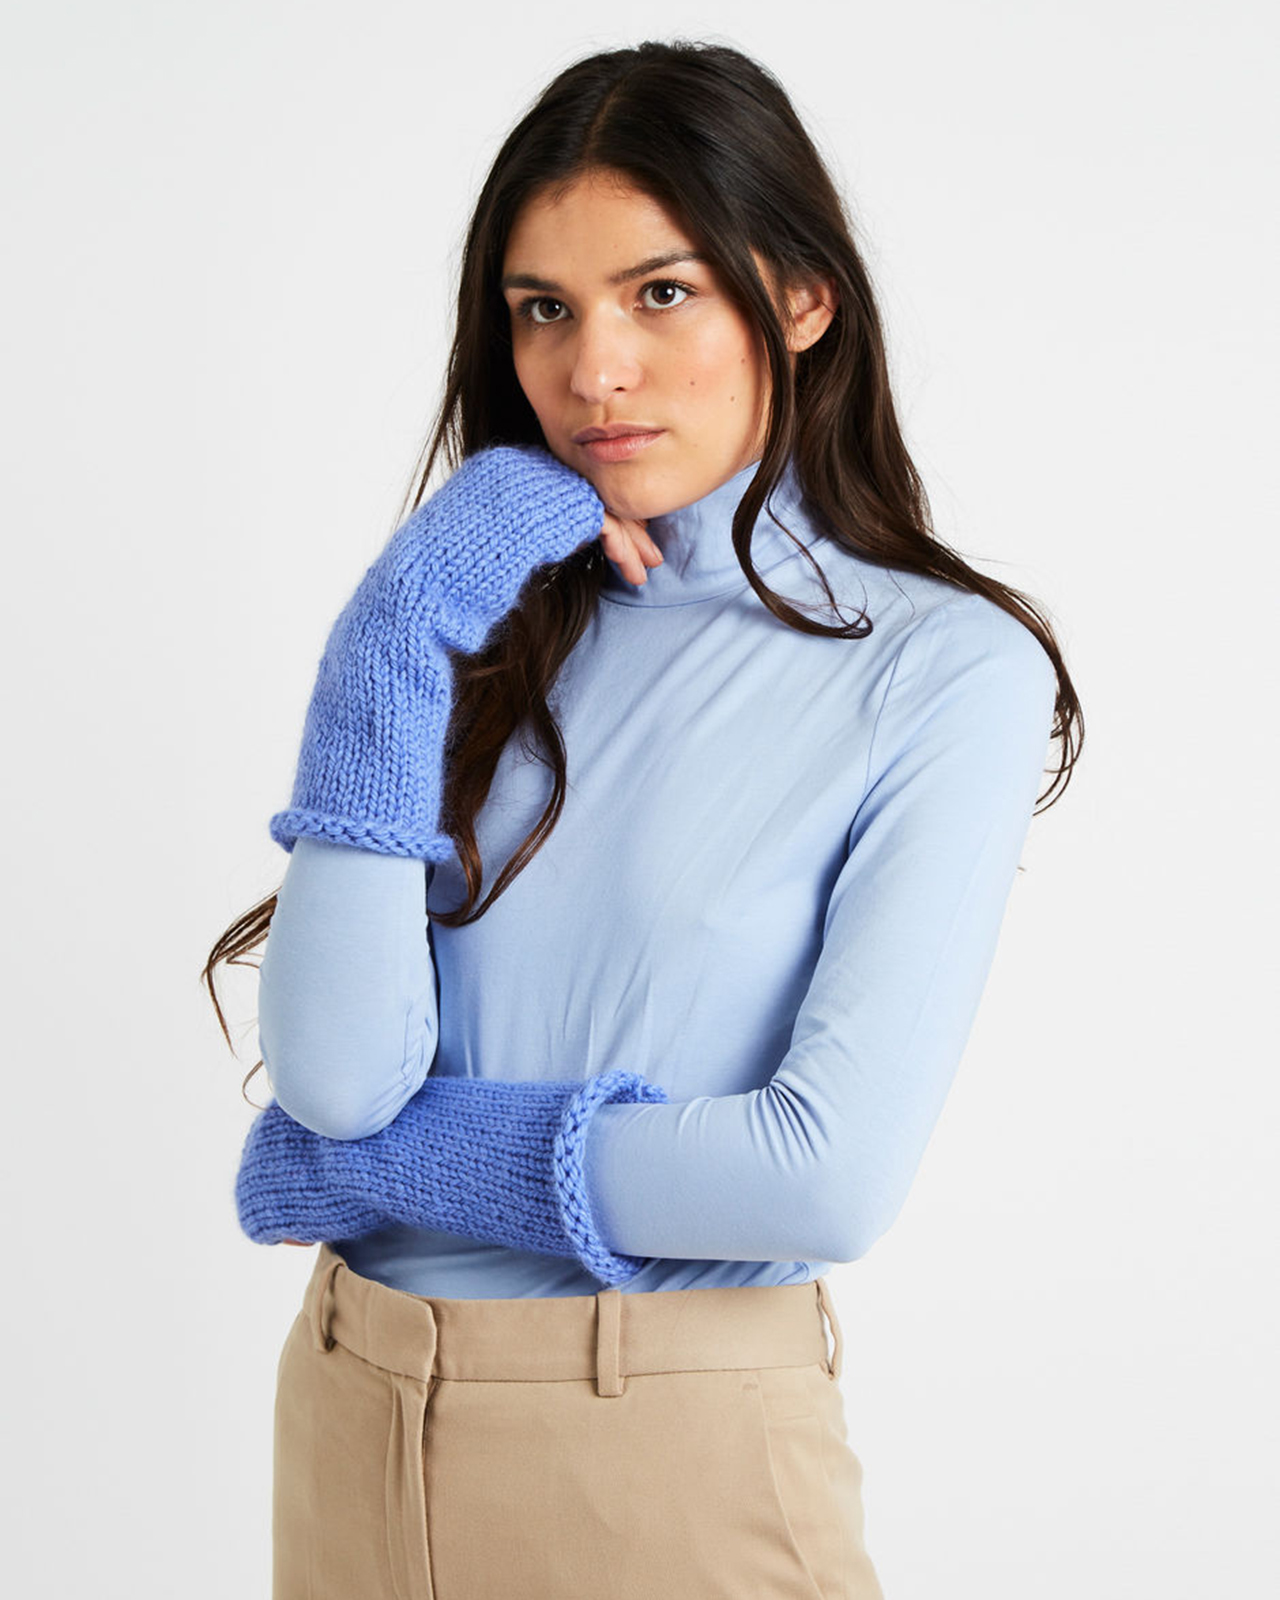 【KATE MITTENS / PATTERN SET】初心者にもおすすめの指なし手袋の編み物パターン